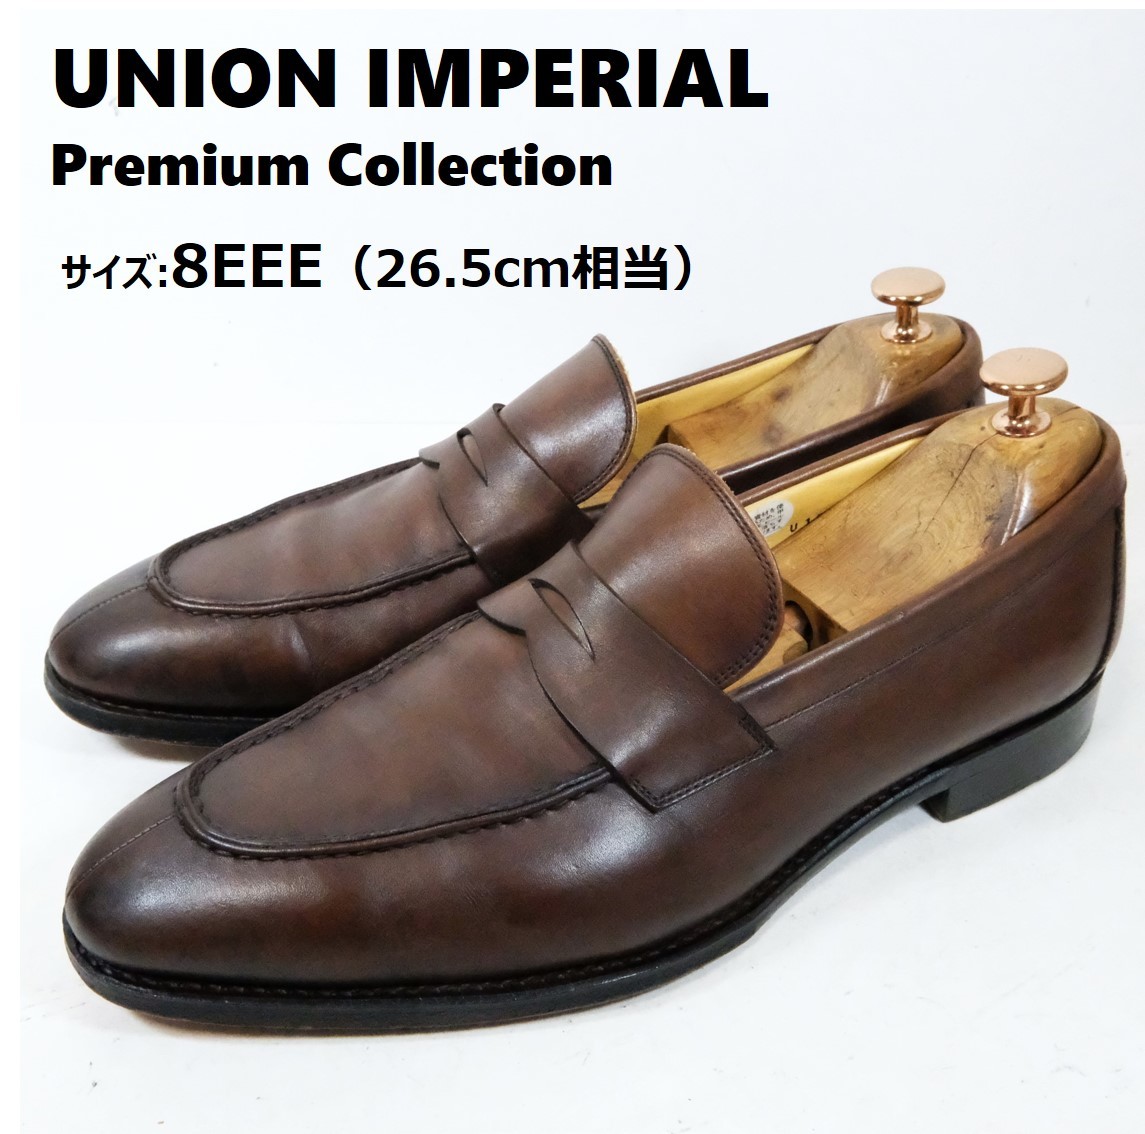 【美品】UNIONIMPERIAL ユニオンインペリアル サイズ 8EEE(26.5cm相当) コイン ローファー ブラウン 茶 ビジネス シューズ 革靴 プレミアム